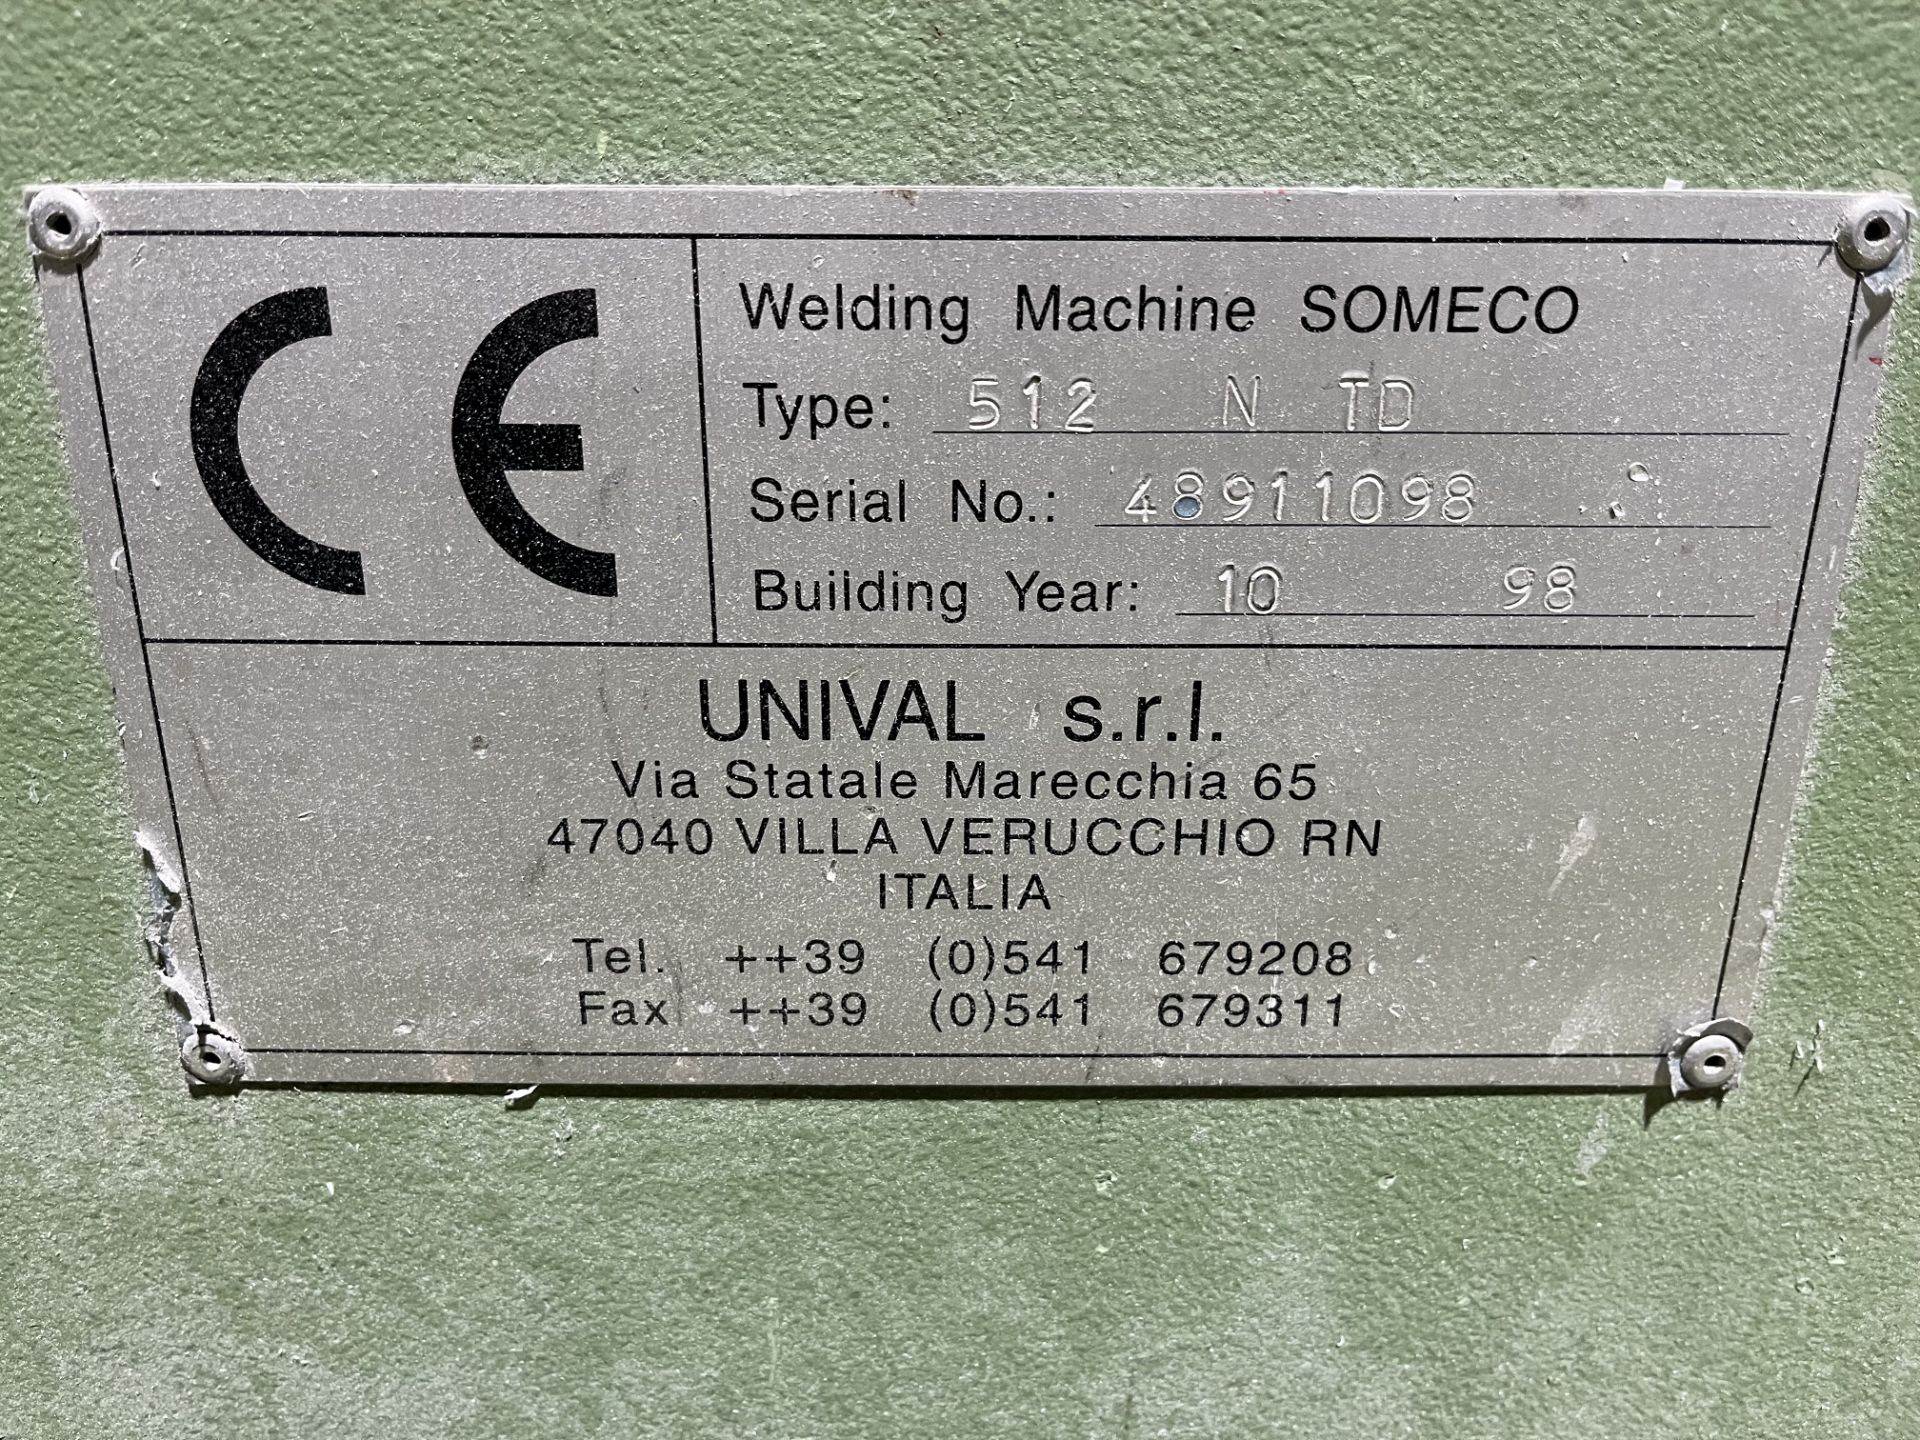 CL15 Someco 512 NTD 3 Head Welder Serial No. 48911098 (1998) - Bild 2 aus 2